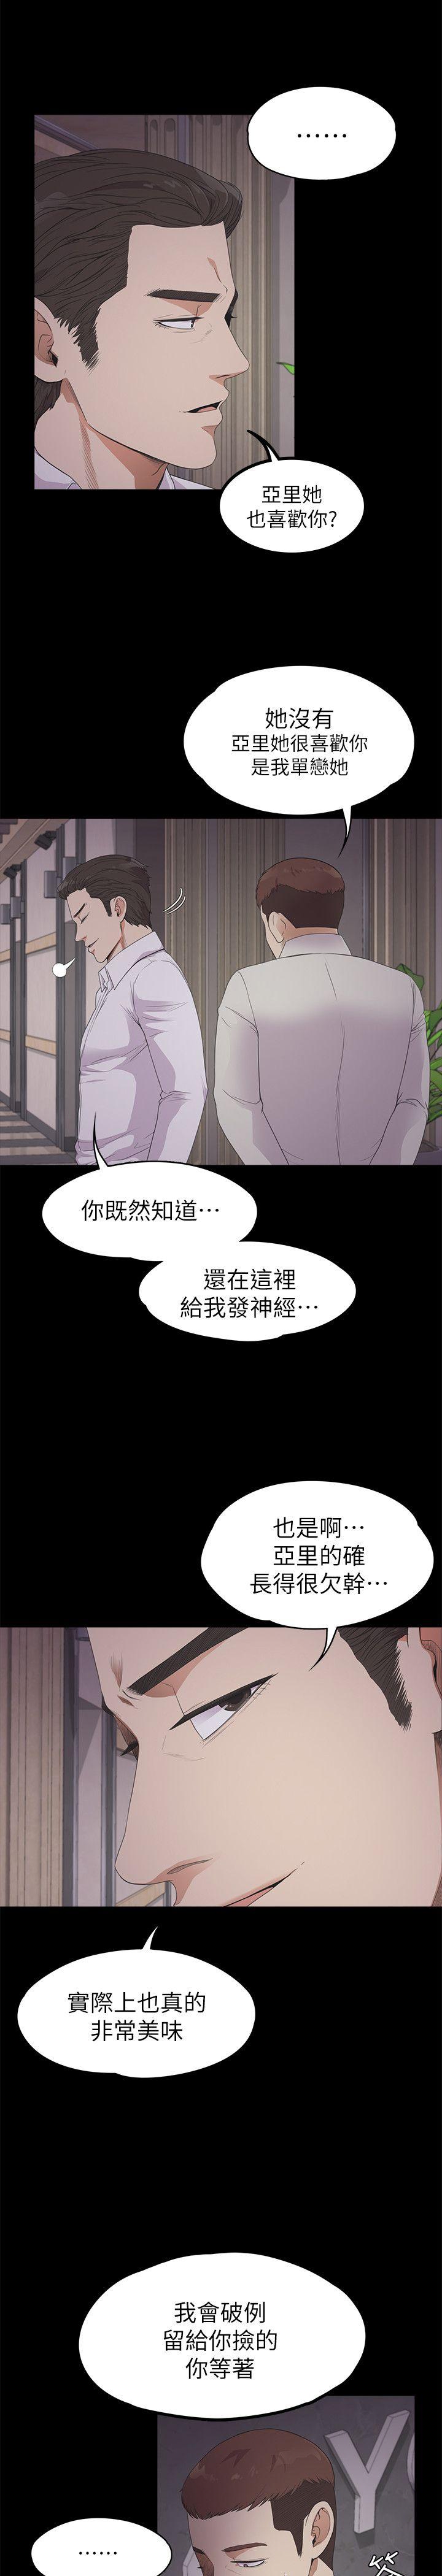 《爱上酒店妹(江南罗曼史)》漫画 第23话 - 盘子的变心(02)